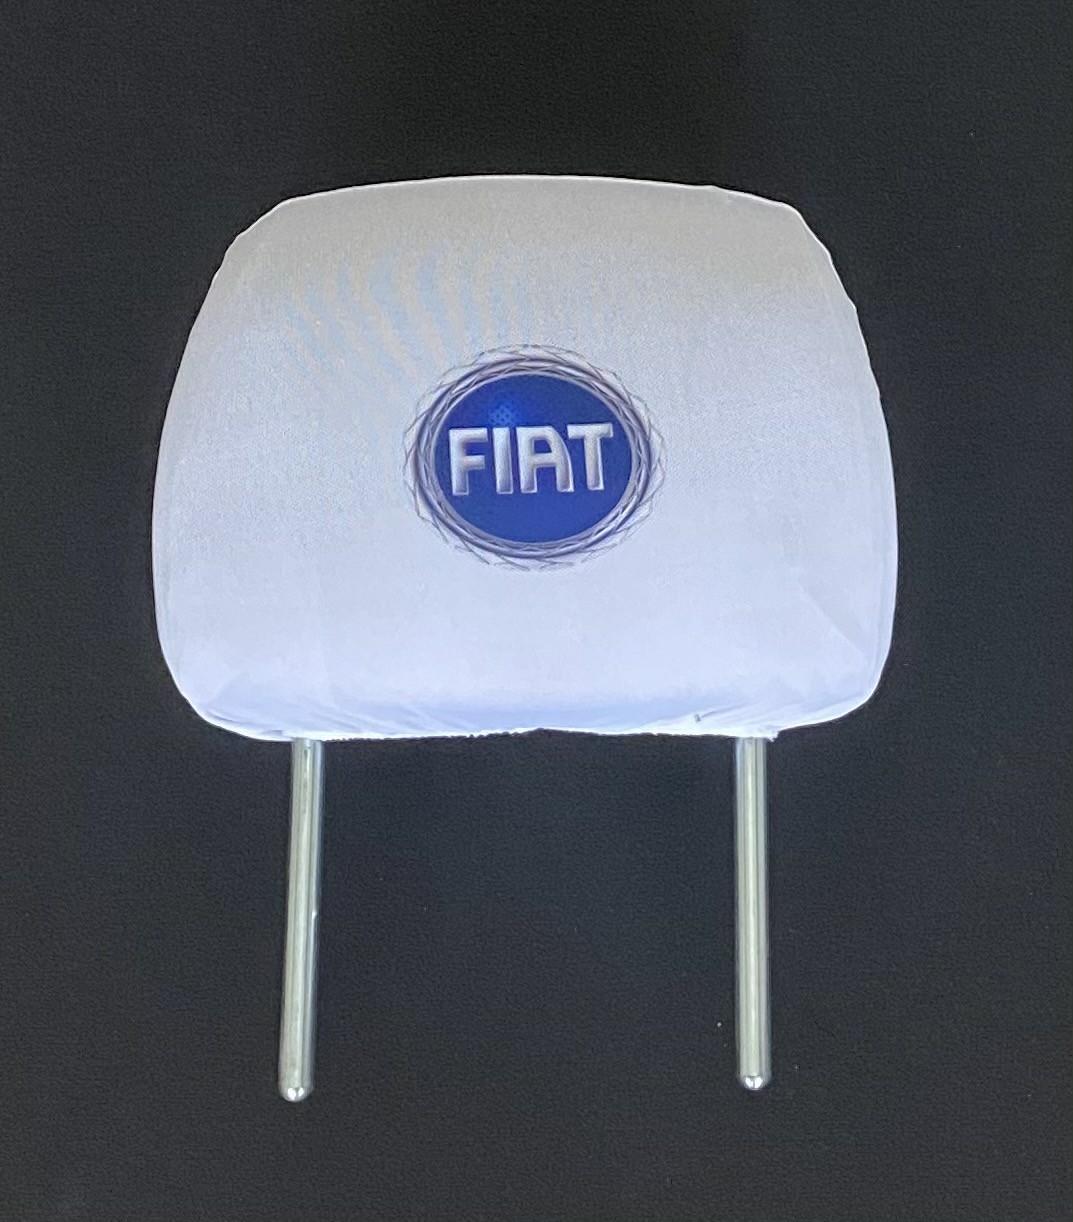 Biele návleky na opierky hlavy s logom Fiat (staré logo) 